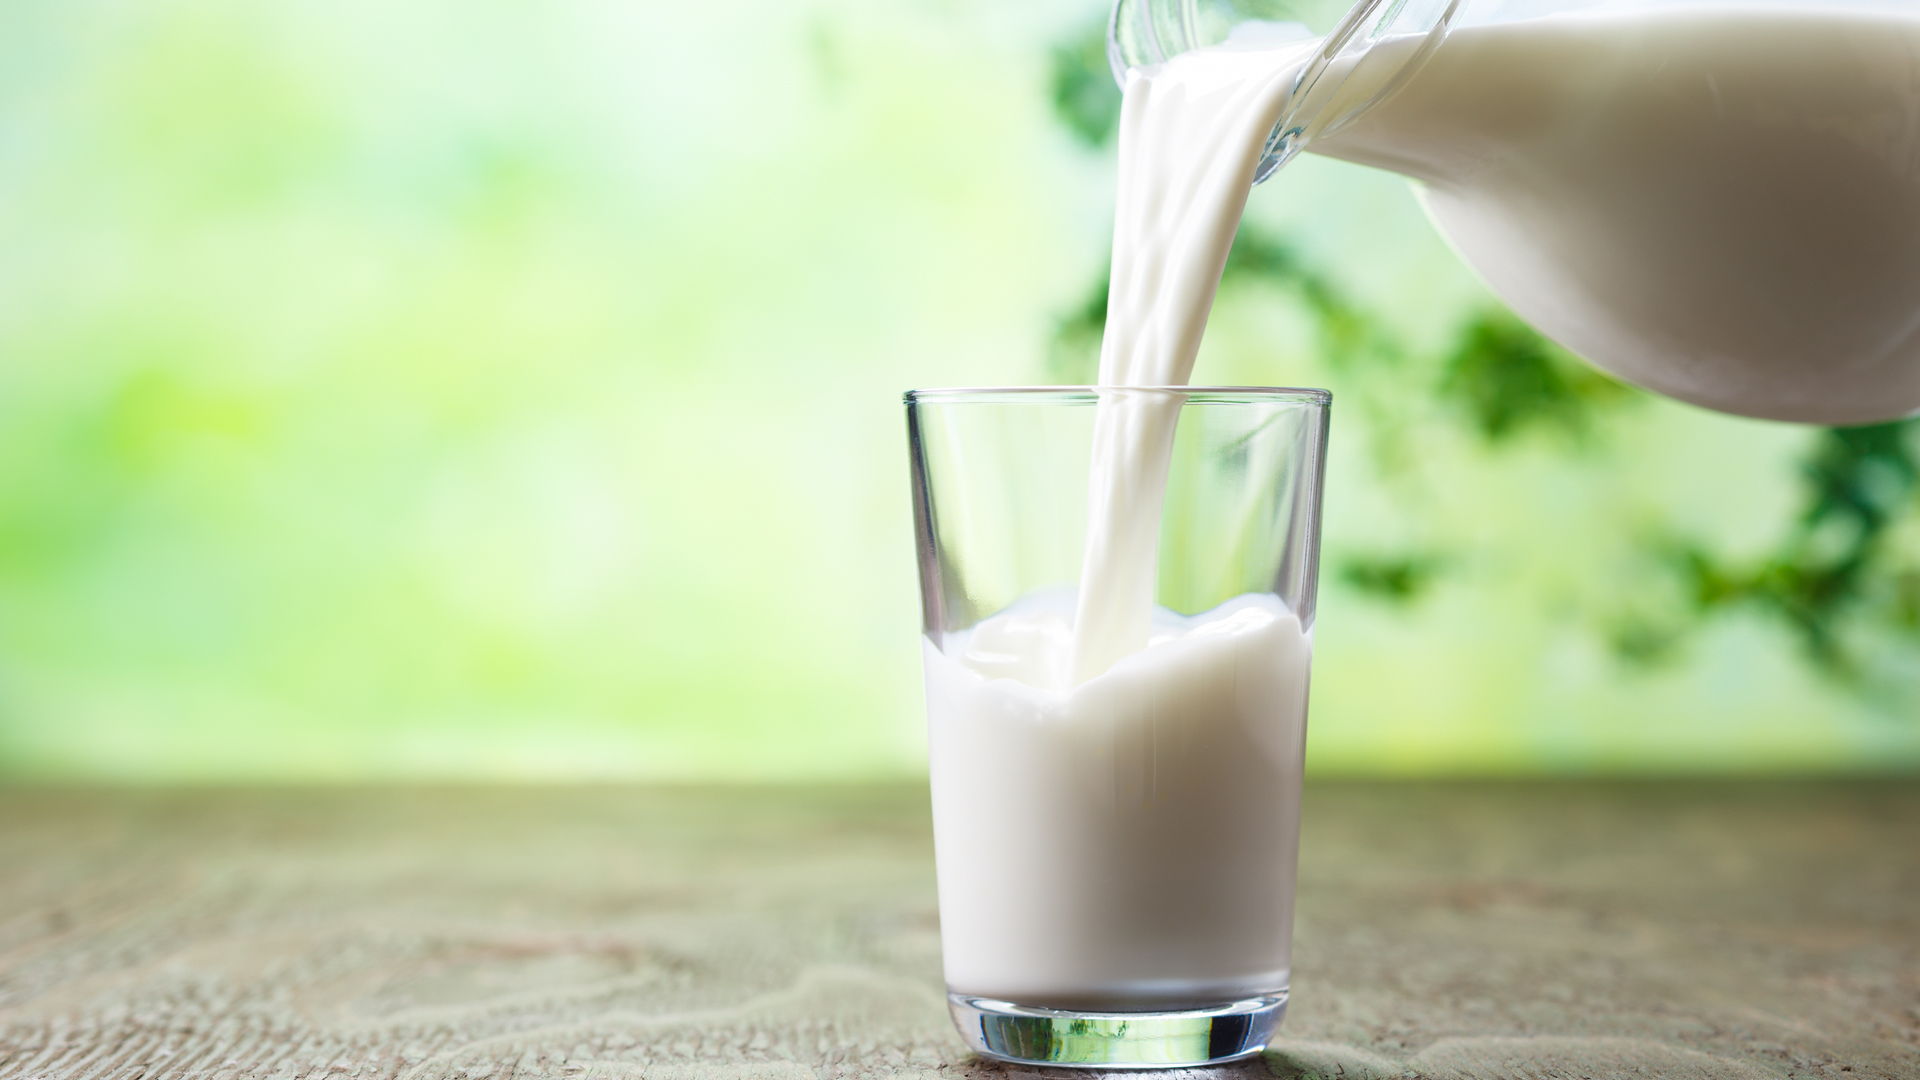 Desde mayores nutrientes hasta hipoalergénica: cómo será la leche del futuro, según la ciencia